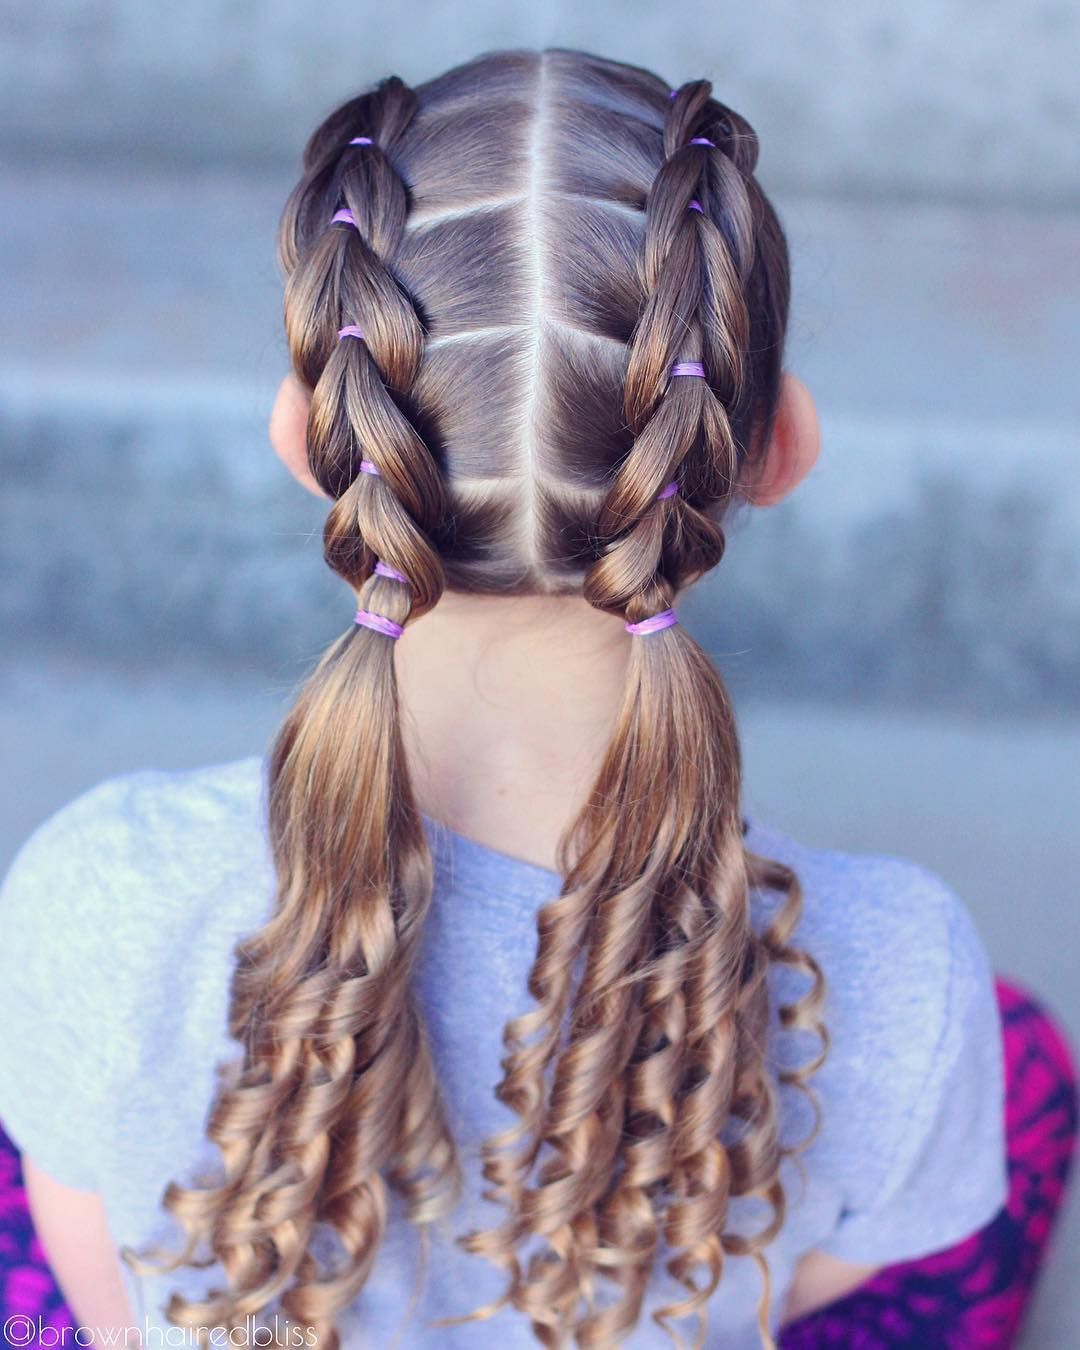 Прически в школу резинками. Прически для девочек. Прически в школу. Красивая коса на длинные волосы для девочки. Причёски для девочек в школу.